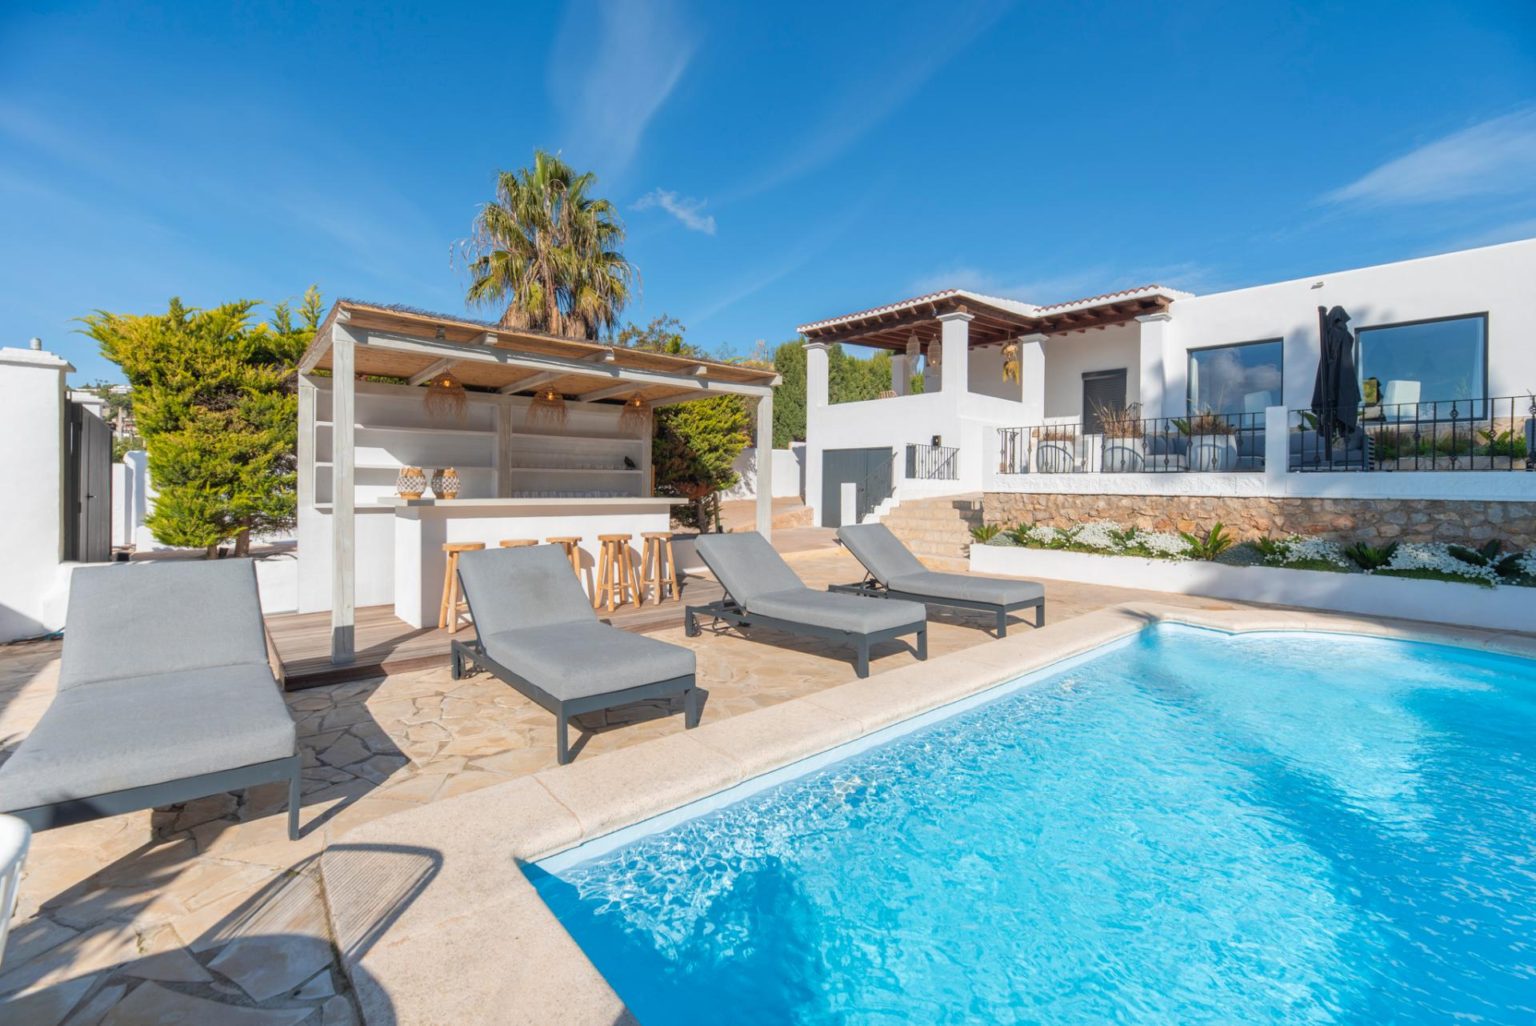 Confortable villa con vistas a la montaña cerca de la ciudad de Ibiza